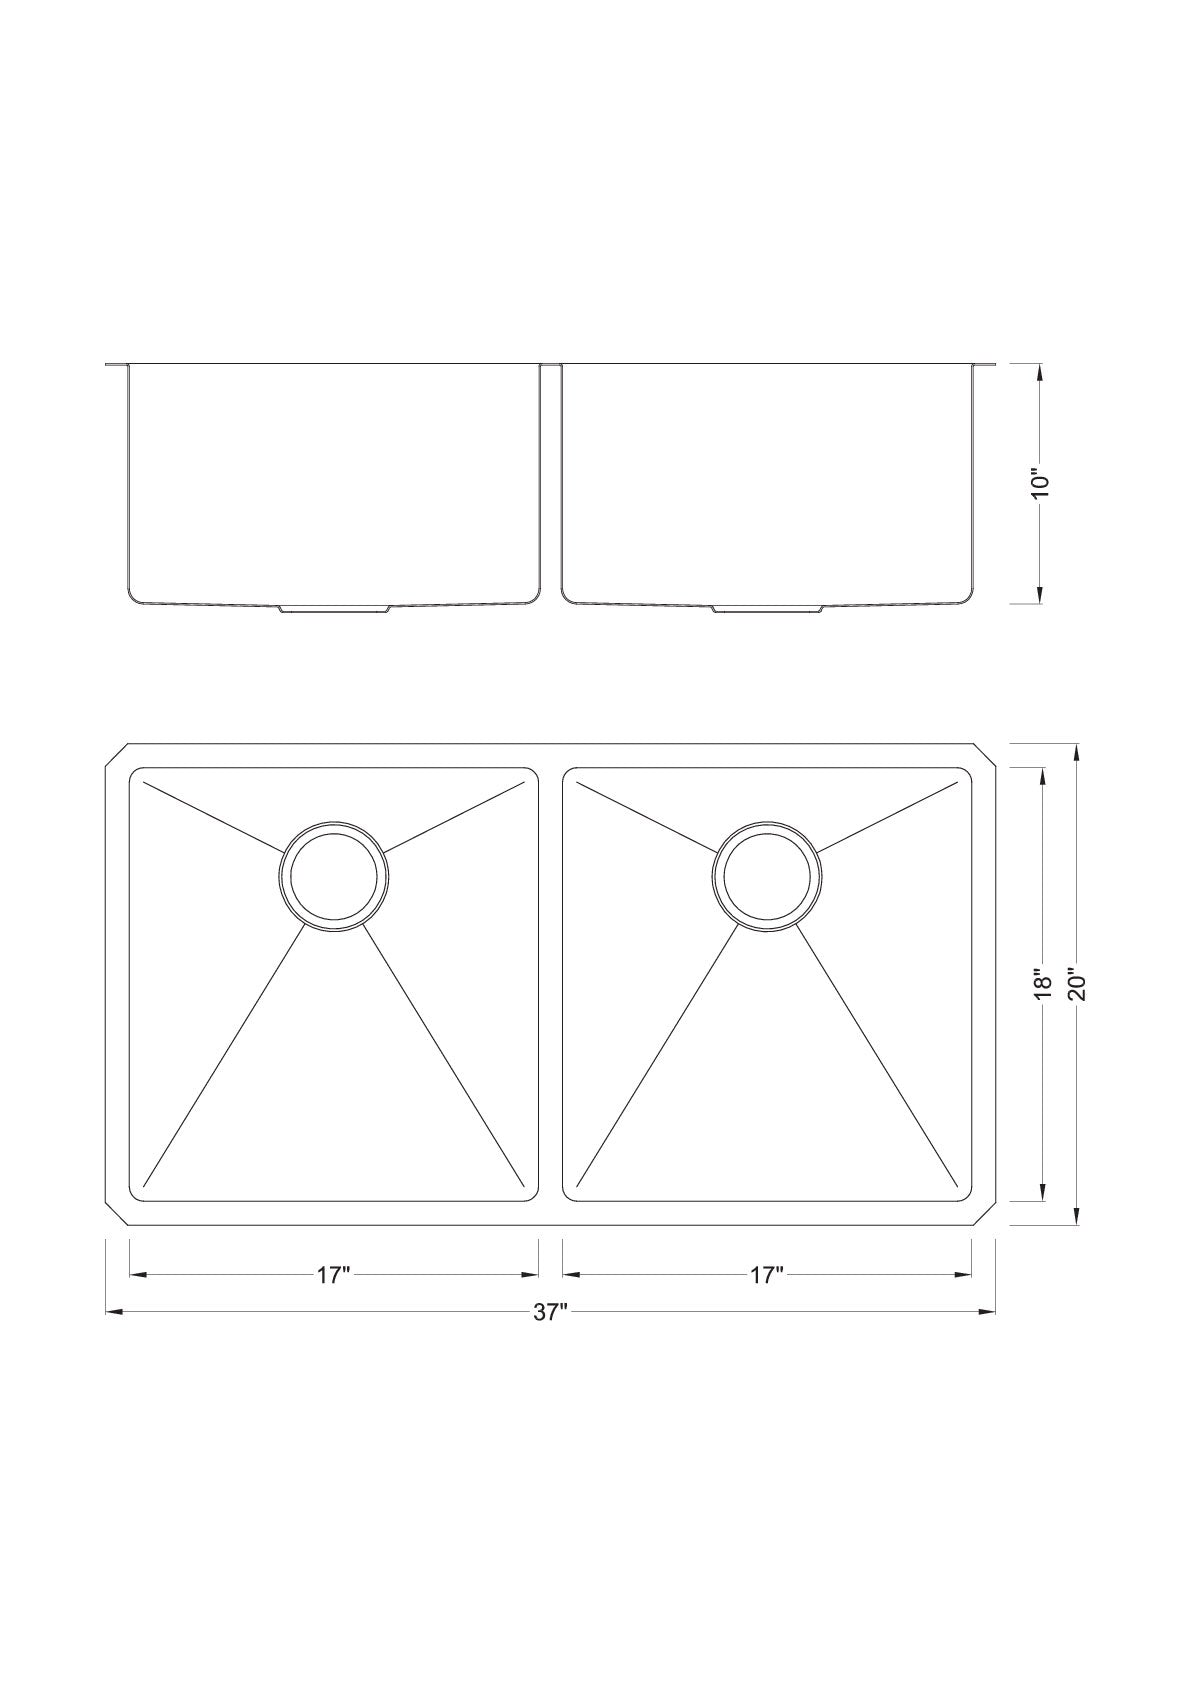 Undermount 16 Gauge Stainless Steel Double Bowl Kitchen Sink with 15mm Radius Corner Design